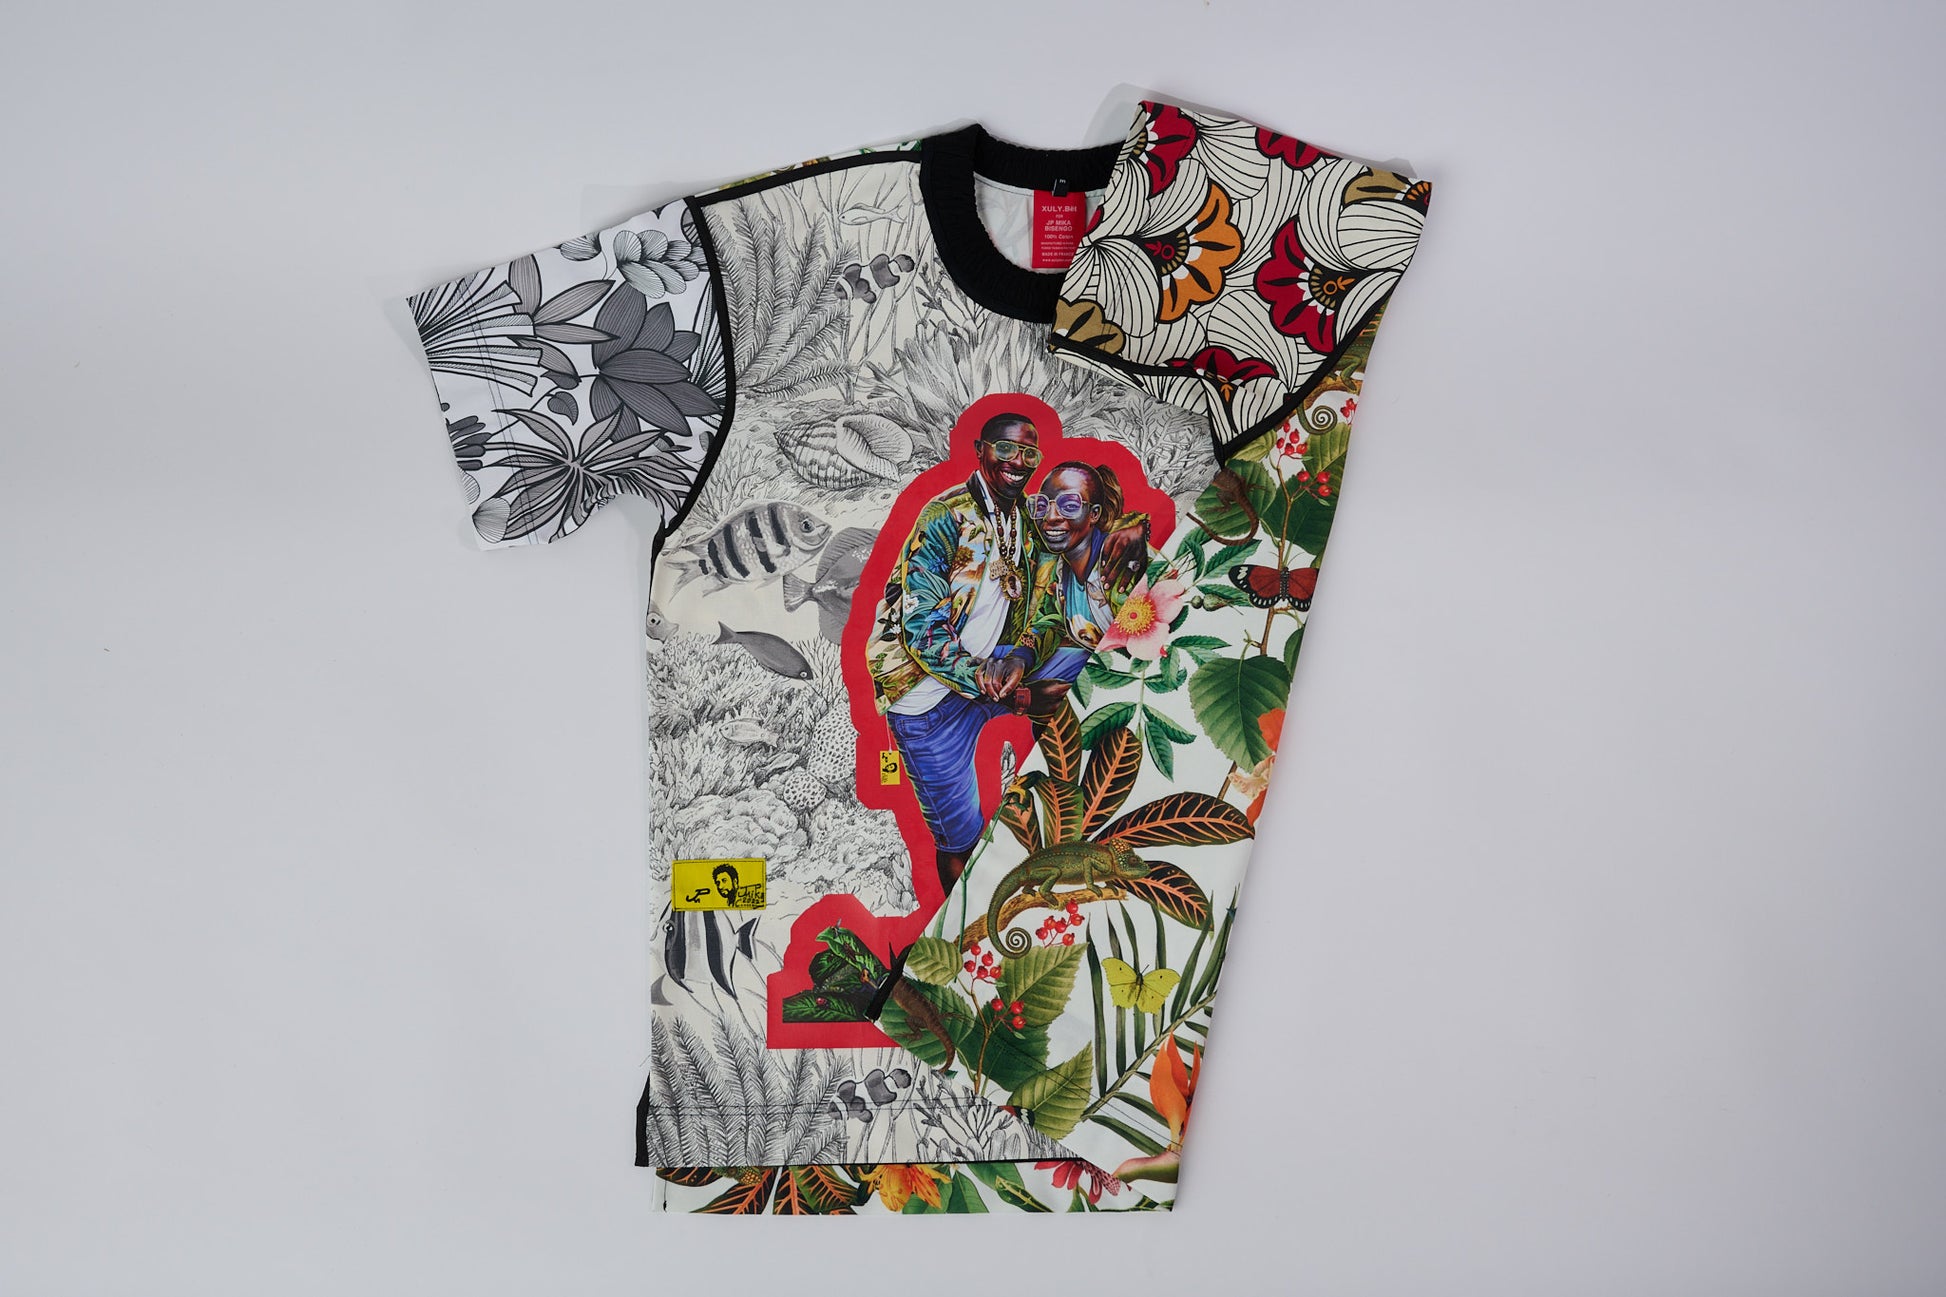 T-shirt BISENGO JP MIKA x XULY-BËT - Numéroté 1/65 - Taille M - Wearable-art inspiré du tableau "Moninga" (l'Amitié) de la série de toiles BISENGO de JP MIKA.